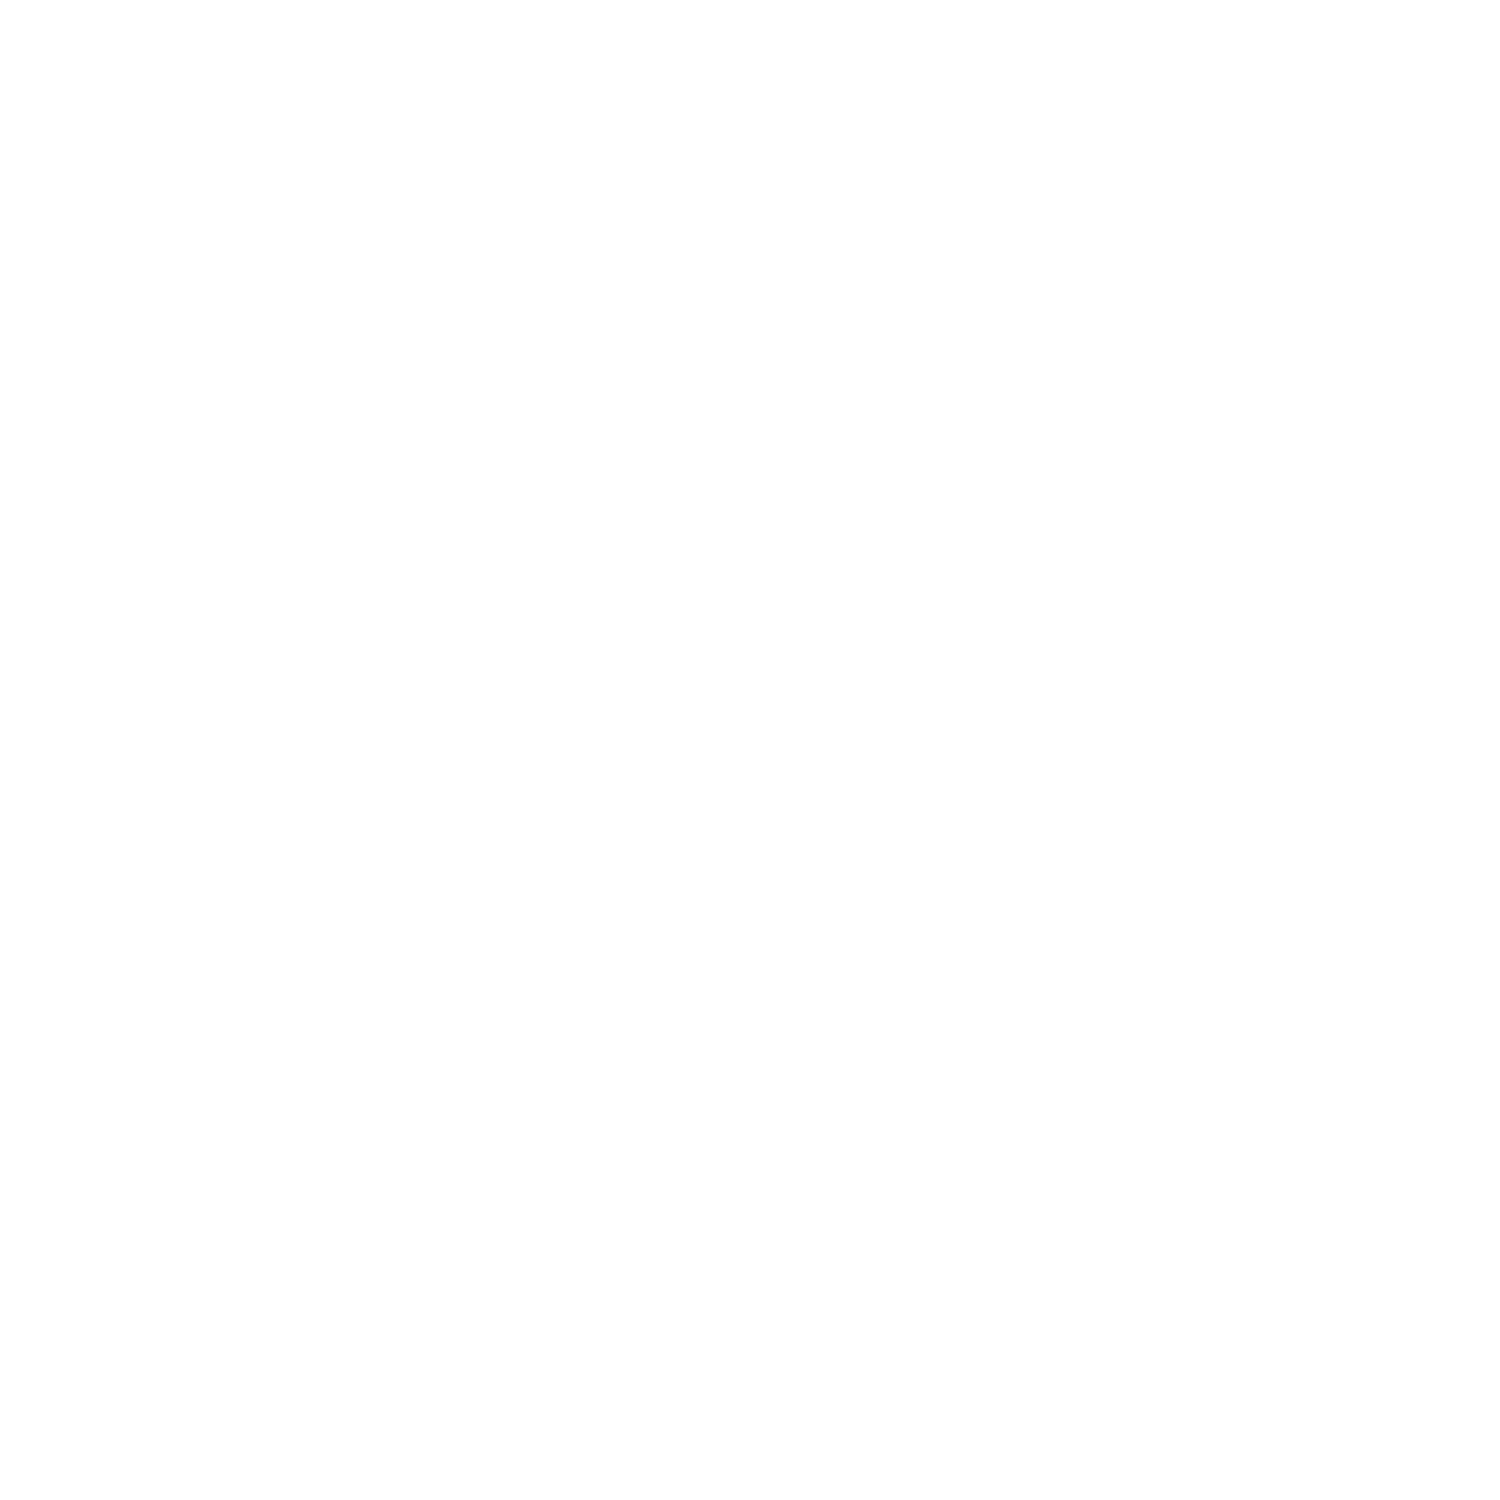 Imago Dei Soccer